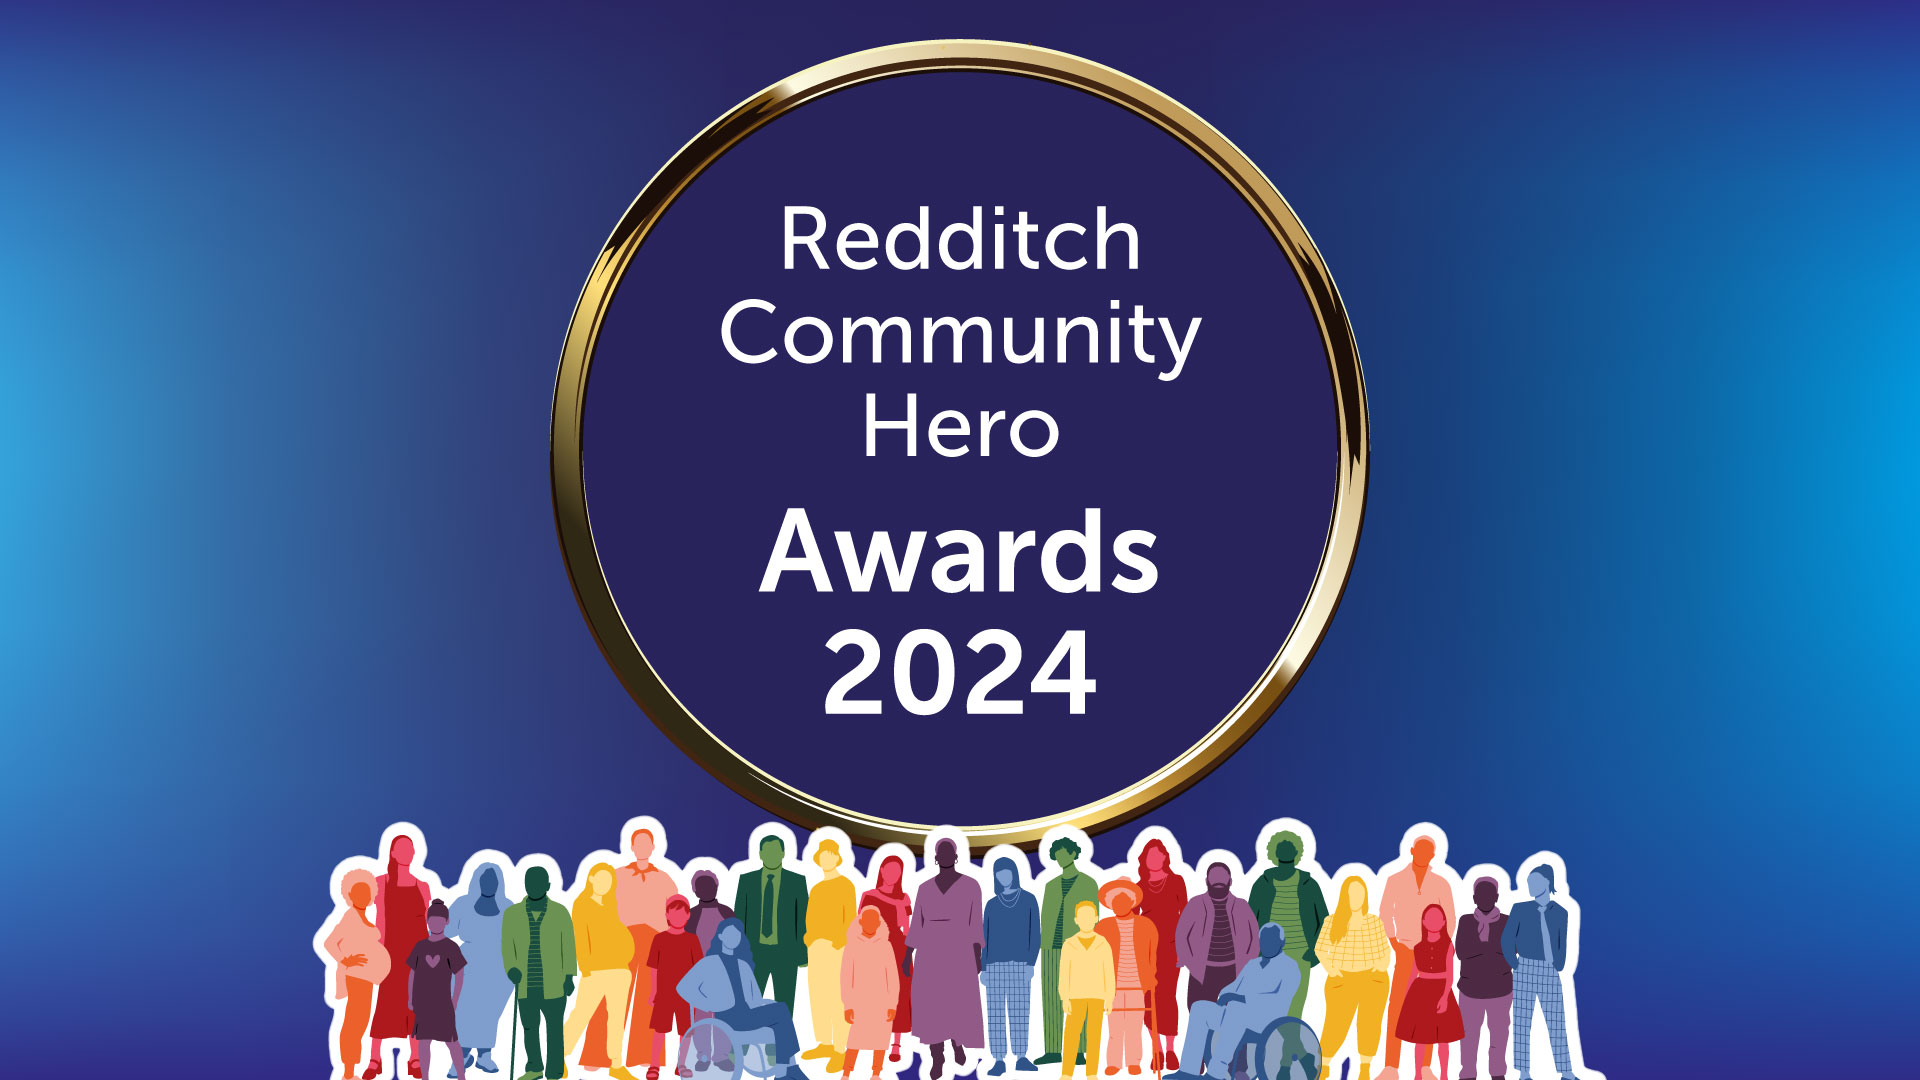 Redditch Community Hero Awards 2024